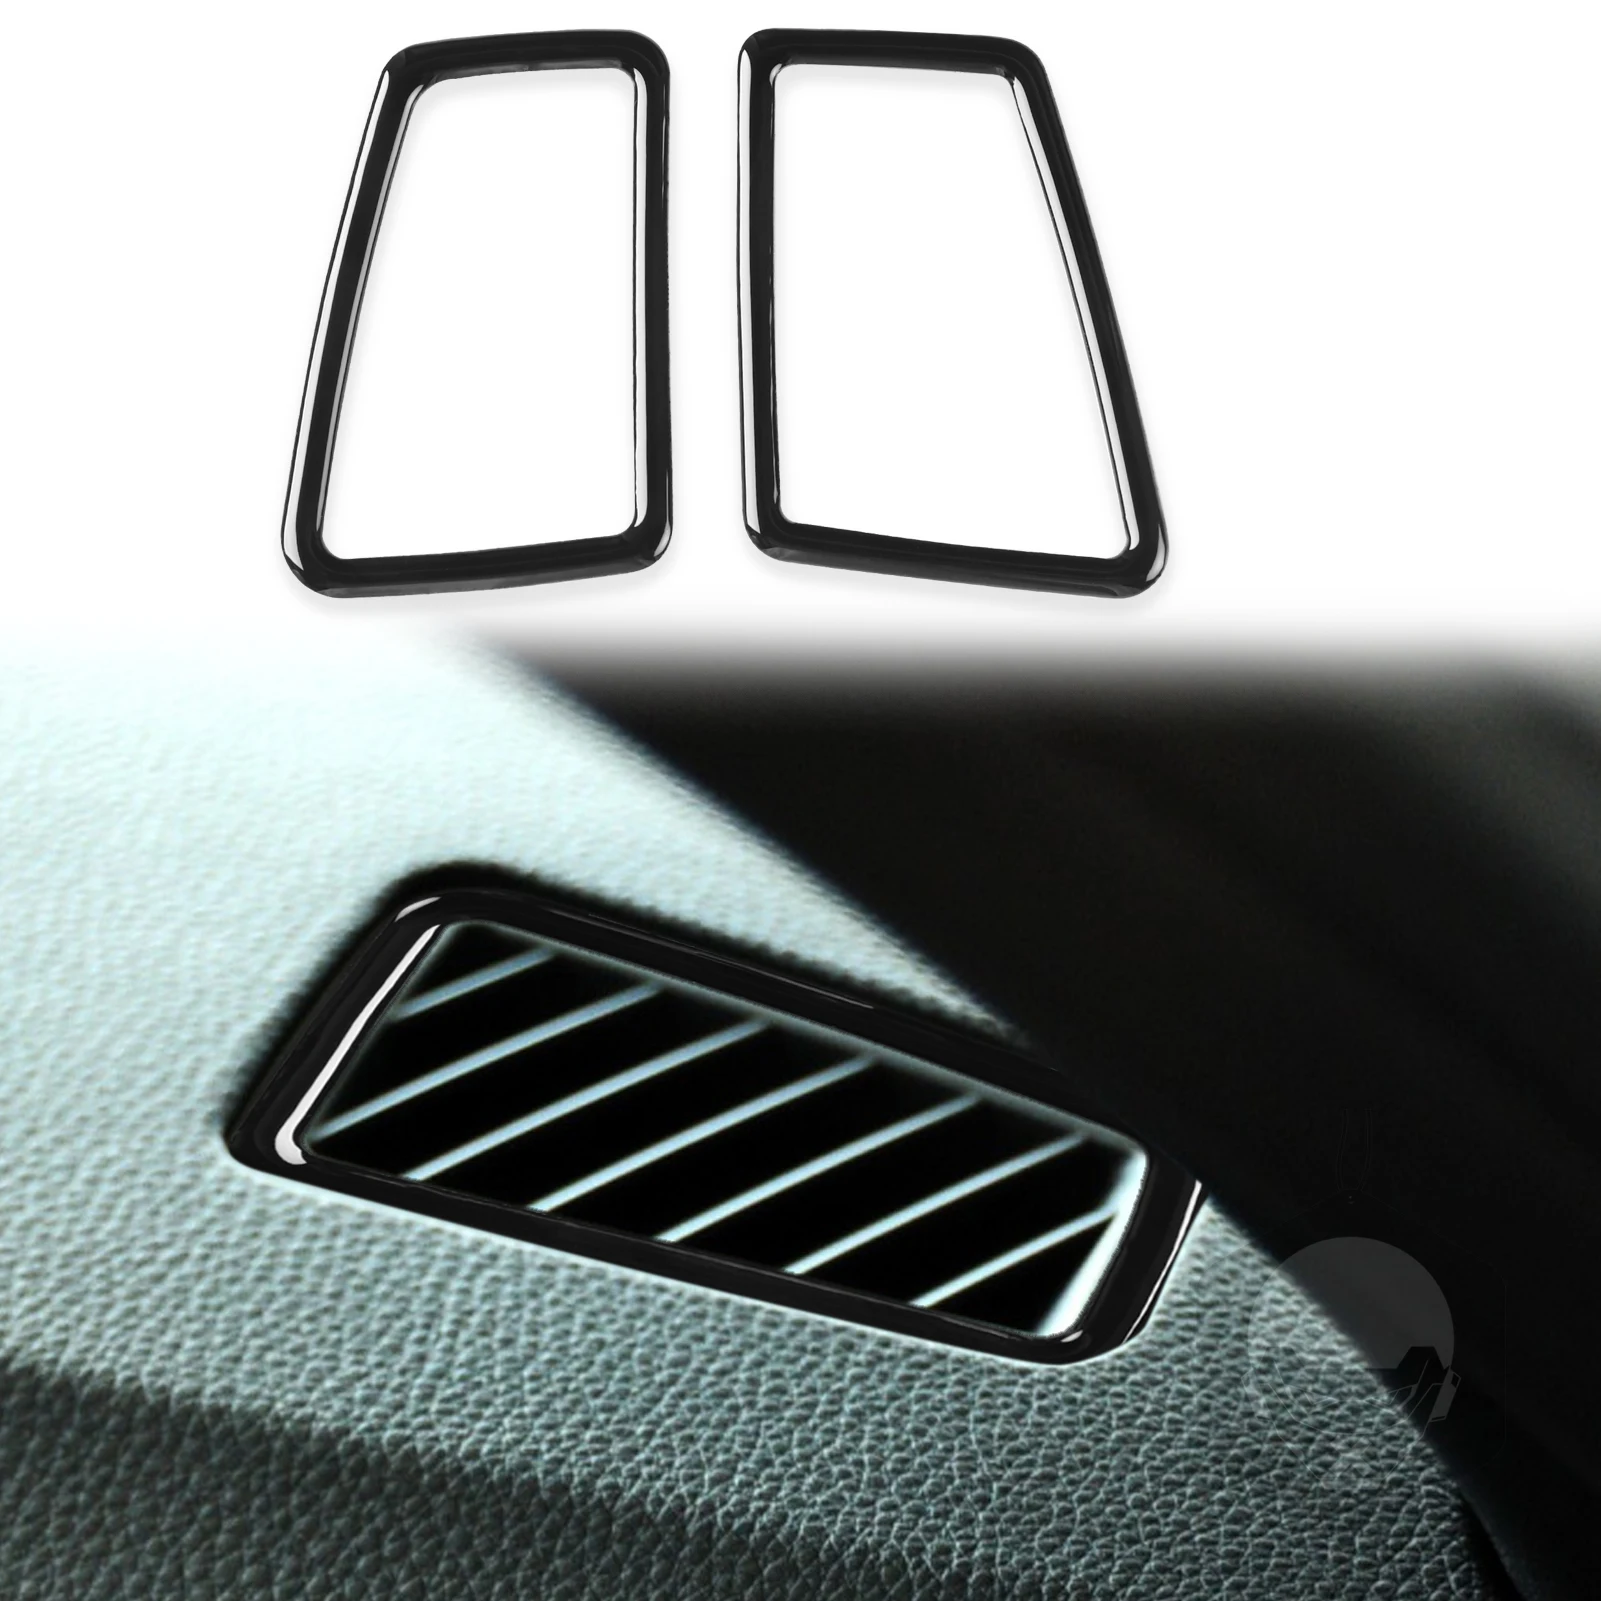 

2pcs Car Control Panel Instrument Air Conditioner Outlet Frame Cover Stickers Trim Decals For BMW 3 Series E90 E92 E93 2005-2012